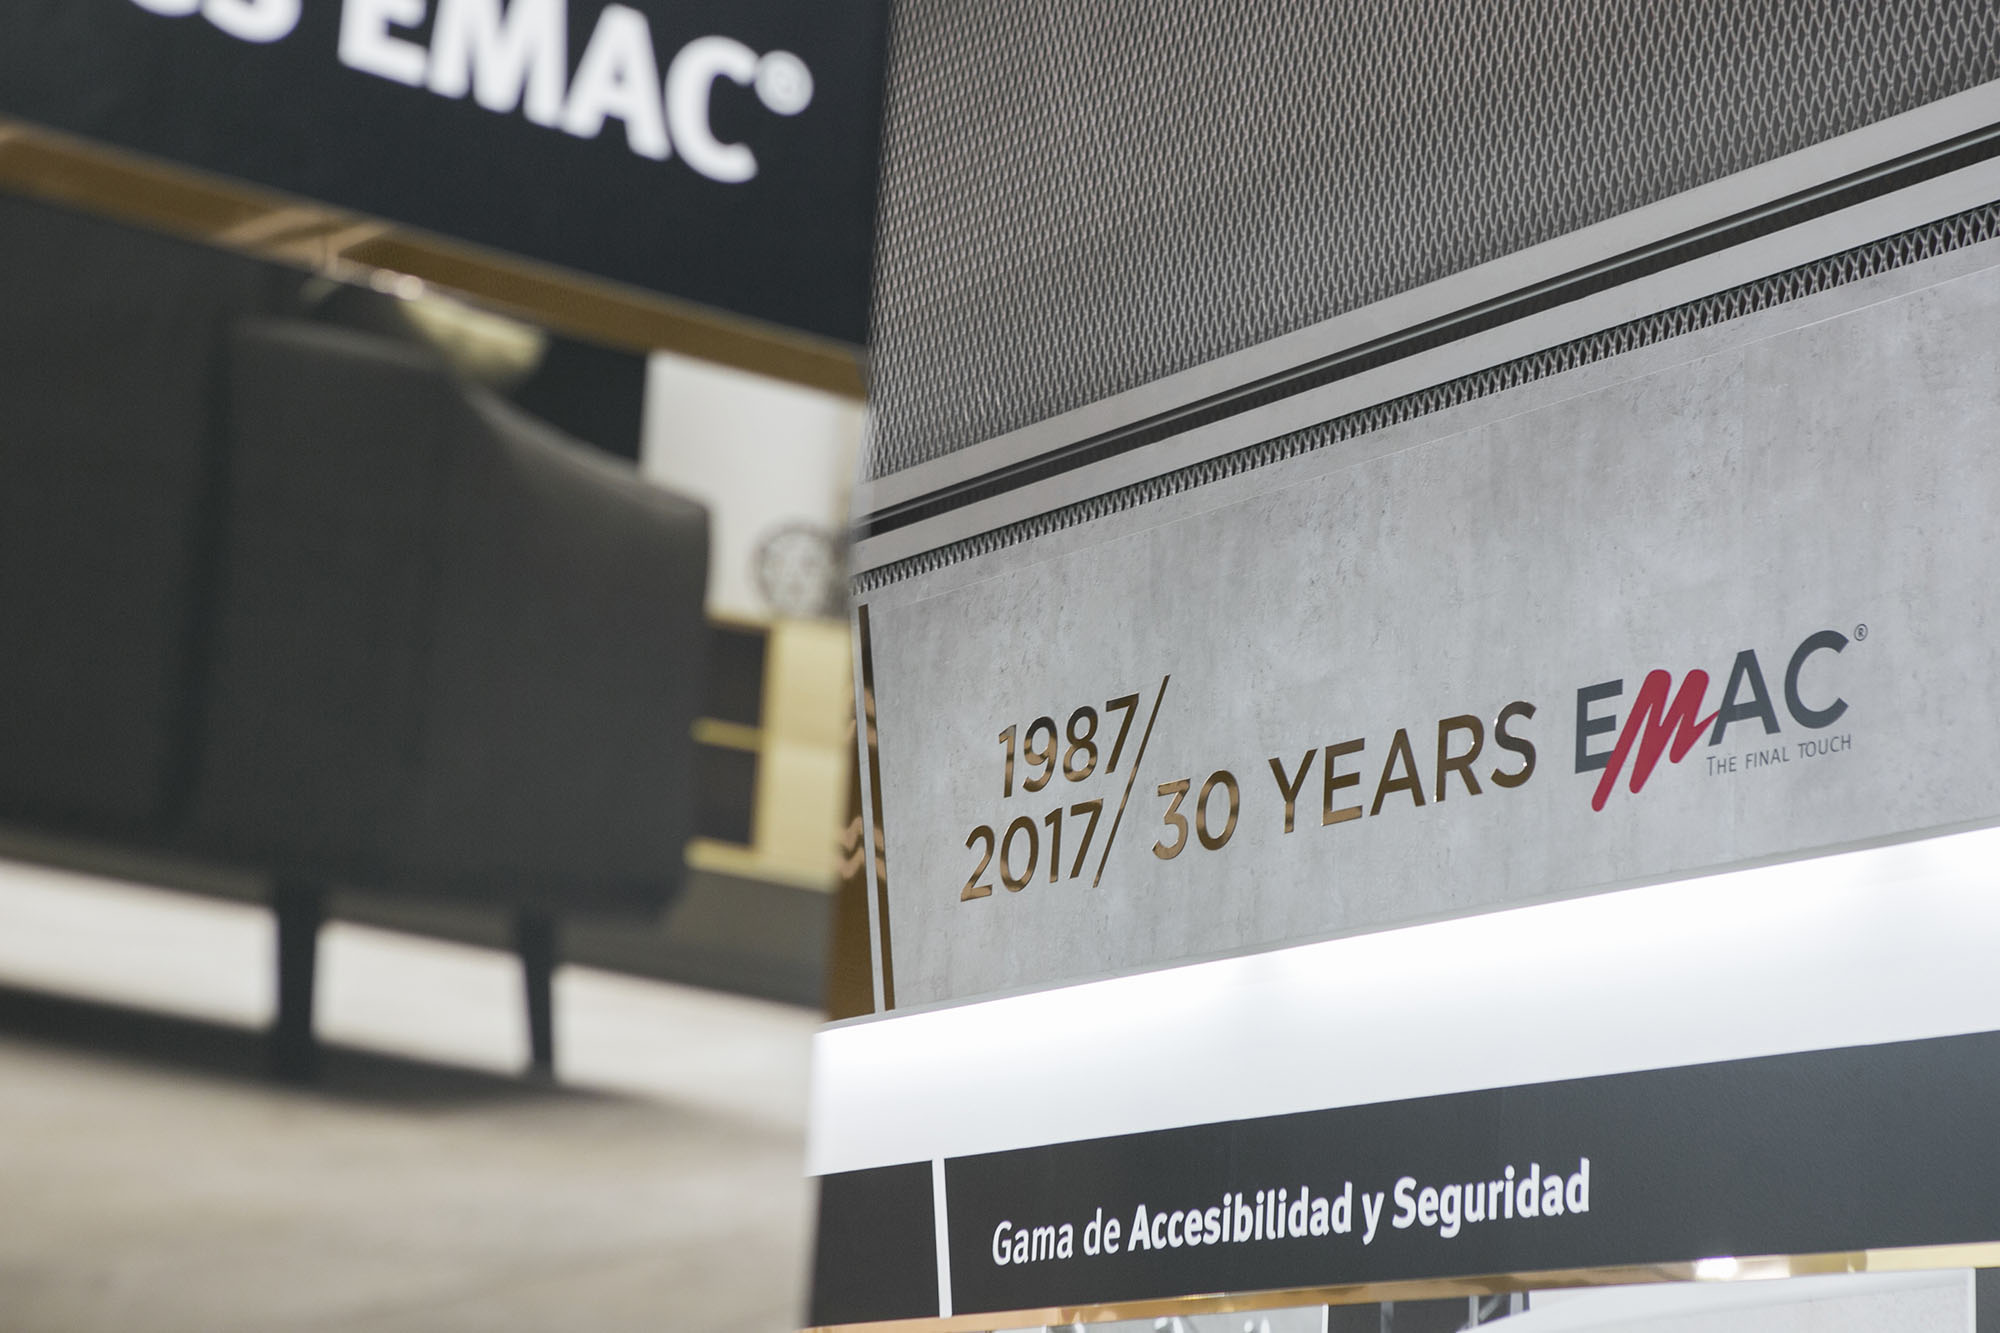 Proyecto de rotulación y exposición de producto para el stand de EMAC Complementos en la feria Cevisama 2017 de Valencia, con motivo de la celebración de su 30 Aniversario.